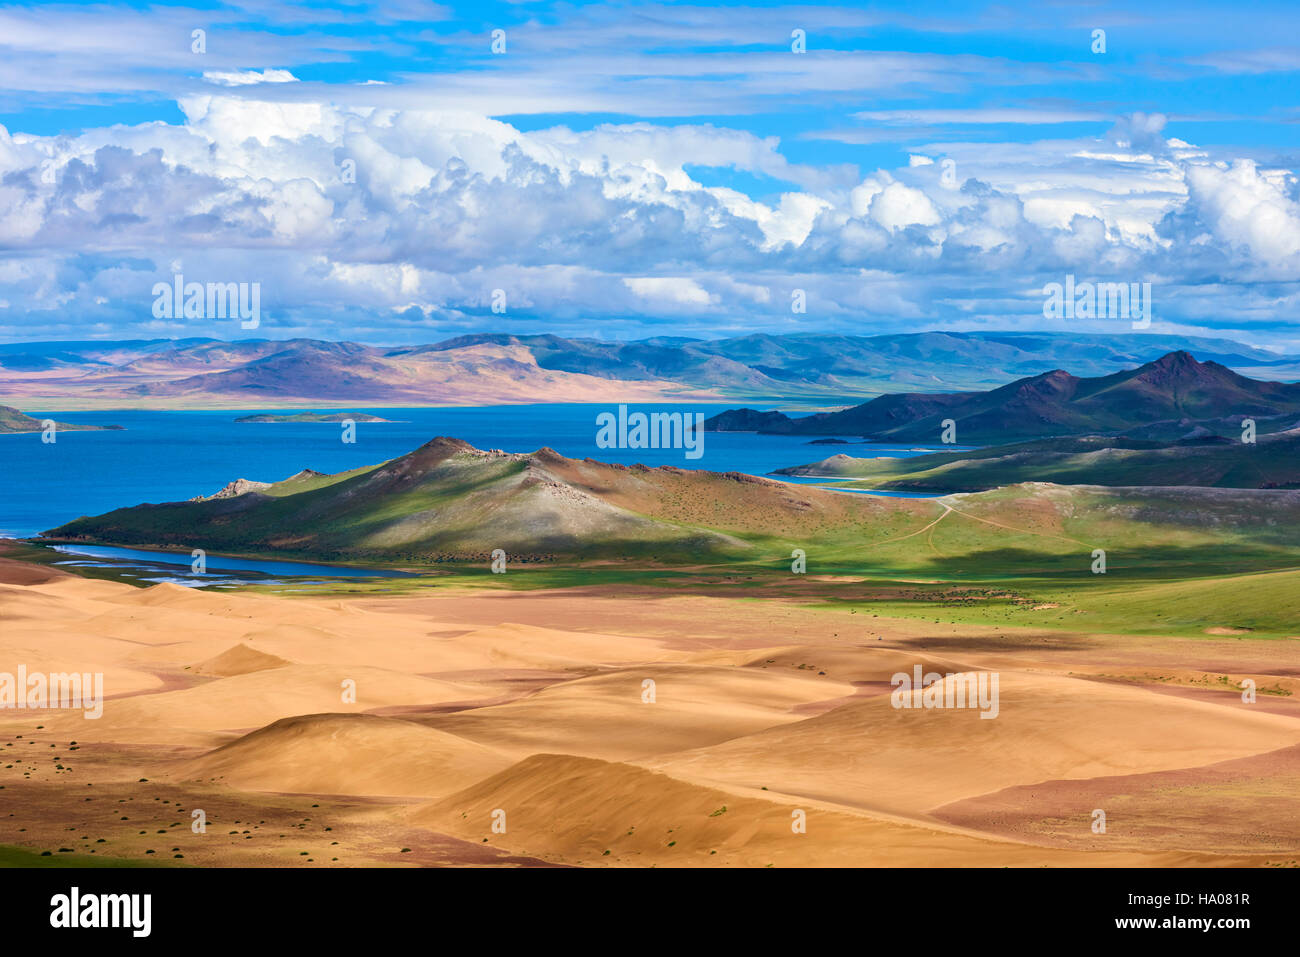 Mongolia, Zavkhan province, Khar Nuur lake Stock Photo